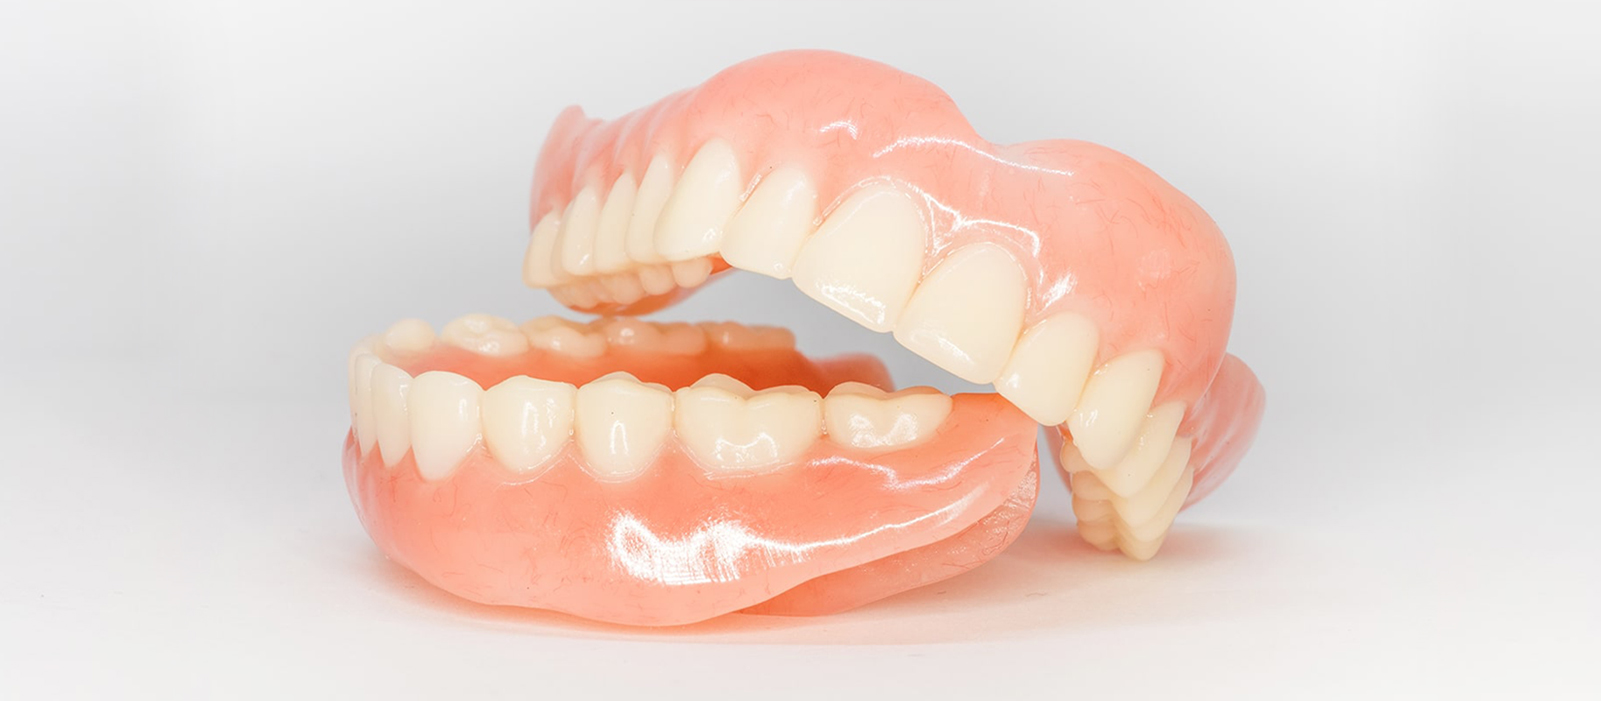 入れ歯とインプラントの違いについて